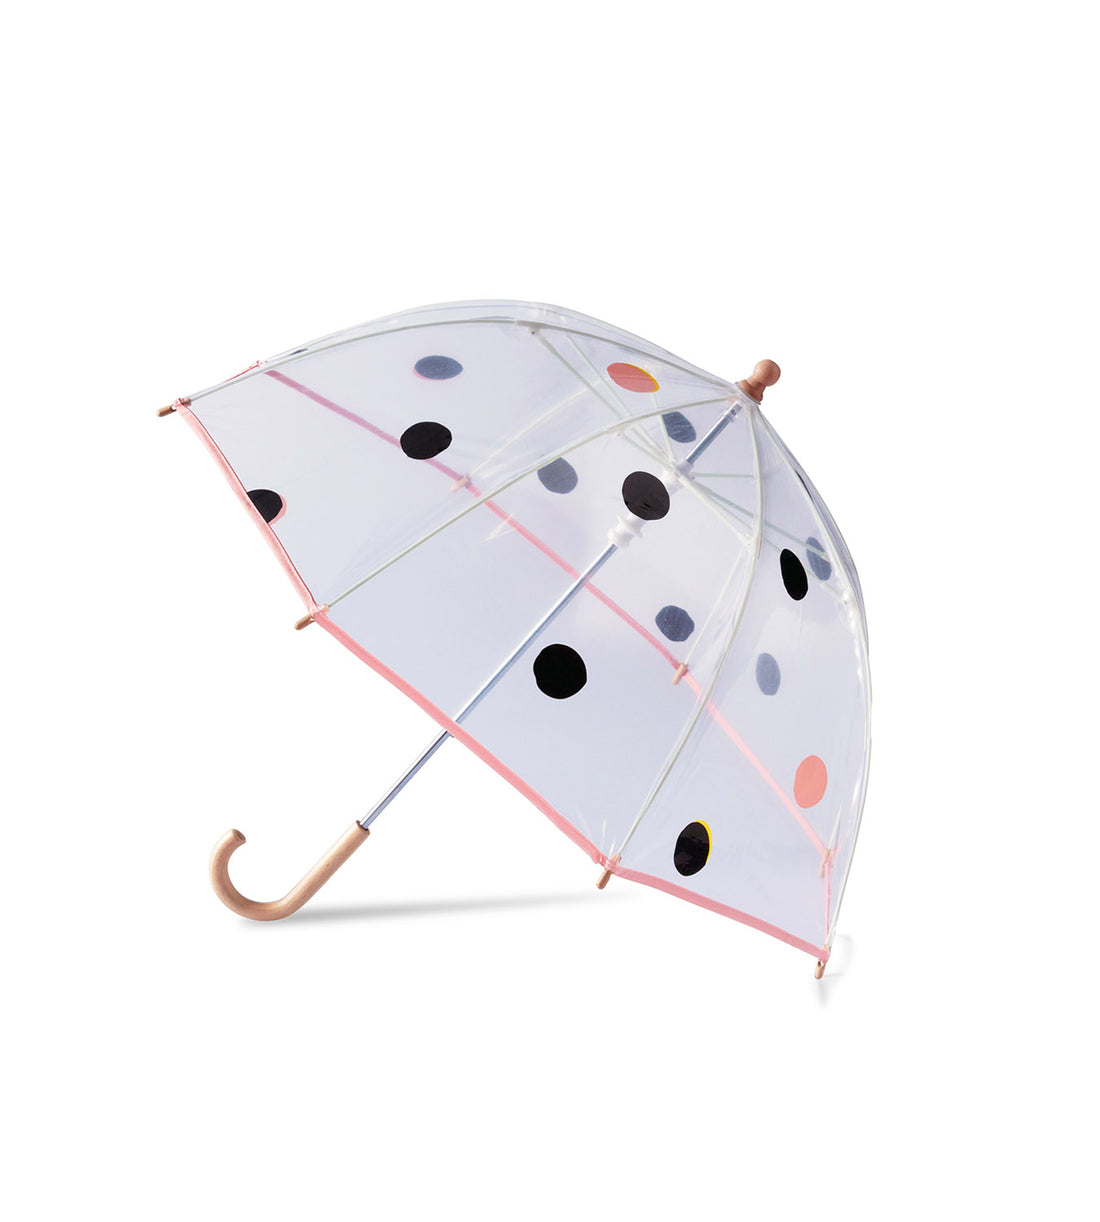 Mini parapluie anatole nara enfant transparent solide léger et ultra compact 